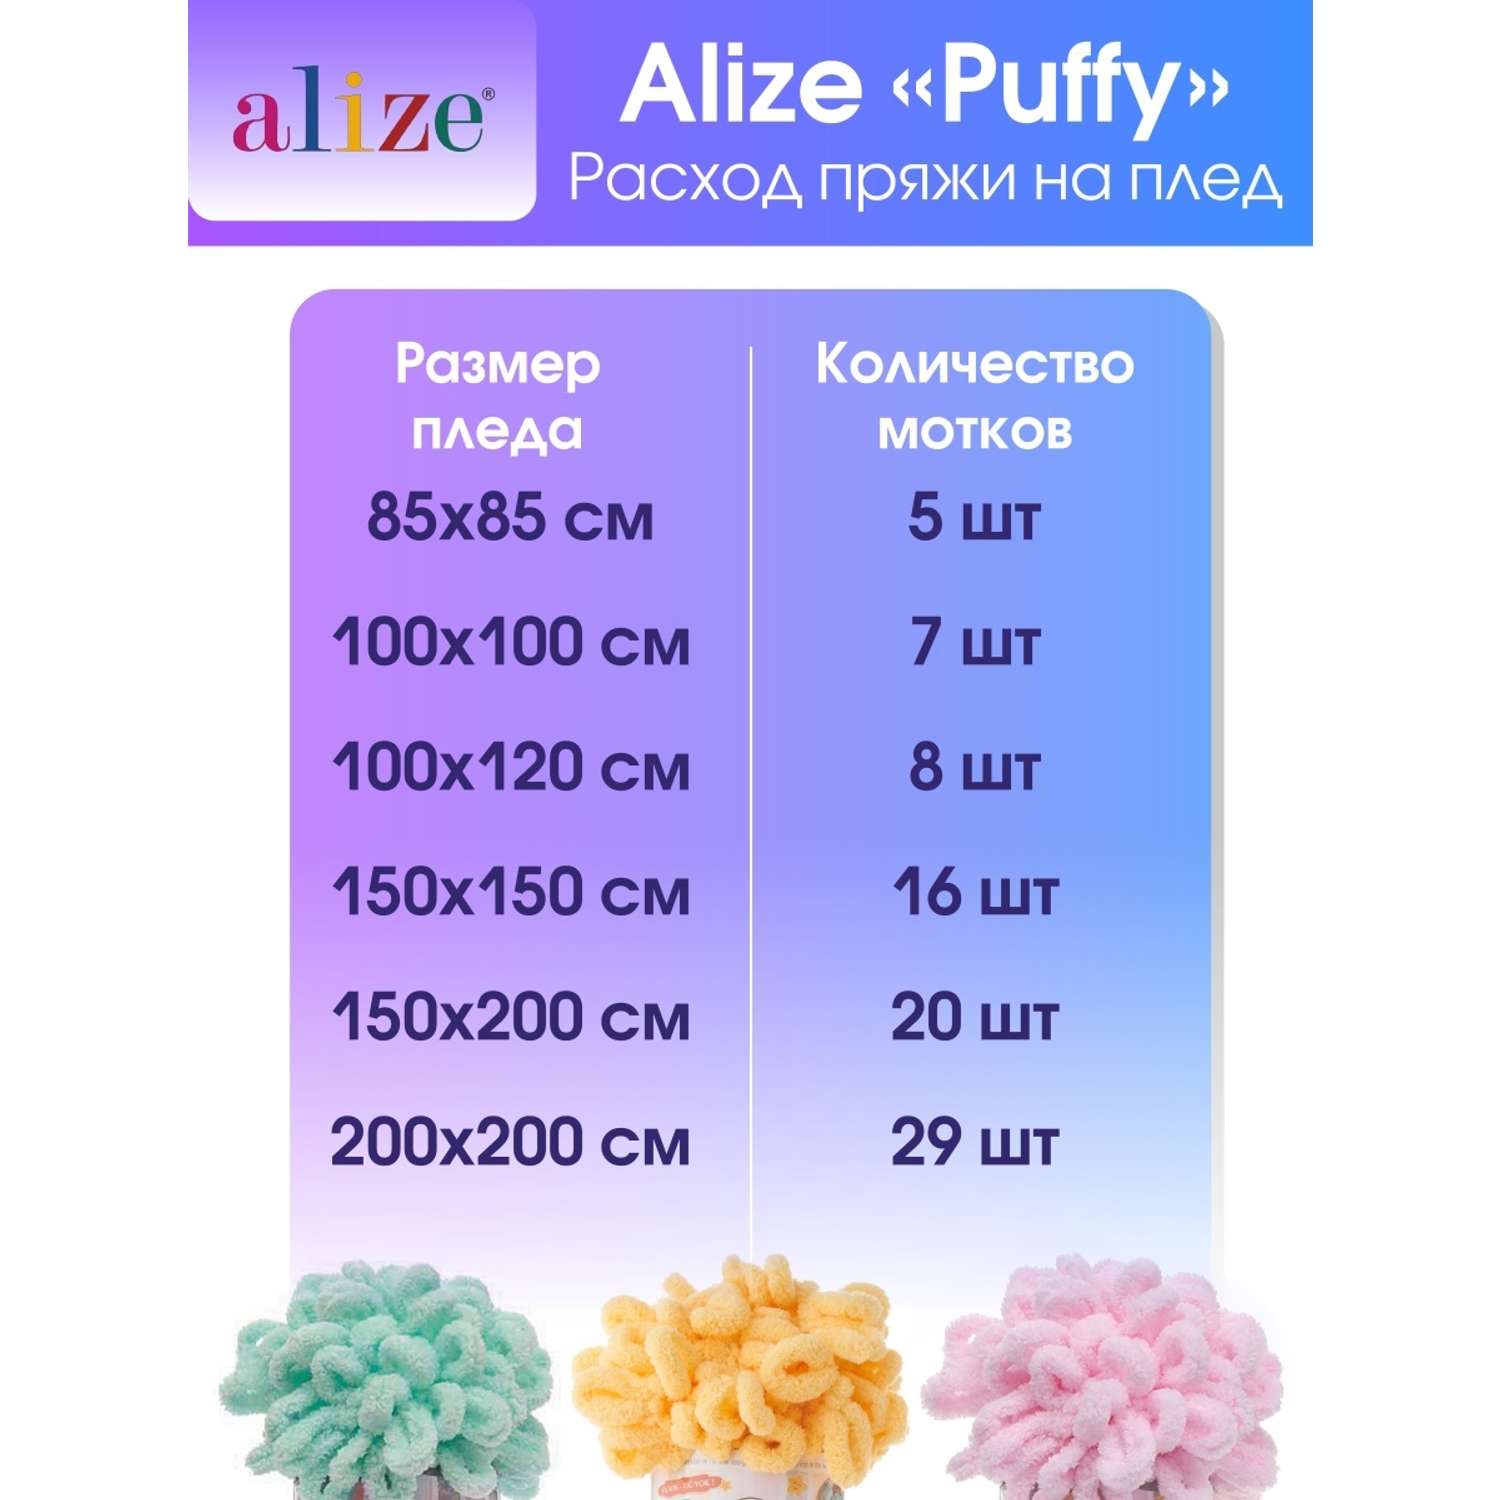 Пряжа для вязания Alize puffy 100 г 9 м микрополиэстер фантазийная плюшевая 742 ванильный 5 мотков - фото 7